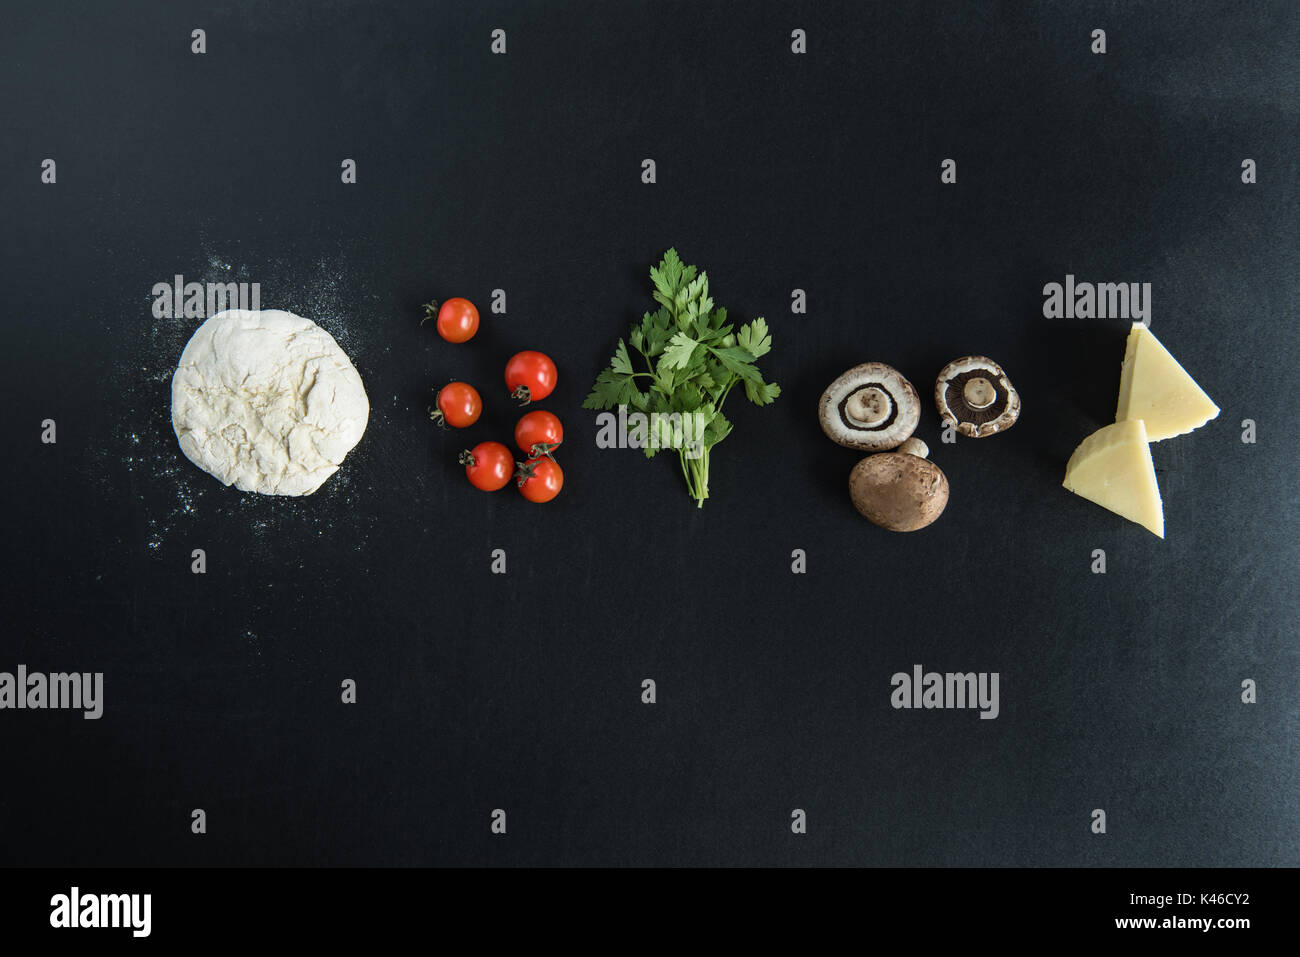 Vista superiore della pasta con gli ingredienti per la preparazione della pizza italiana sulla superficie scura Foto Stock